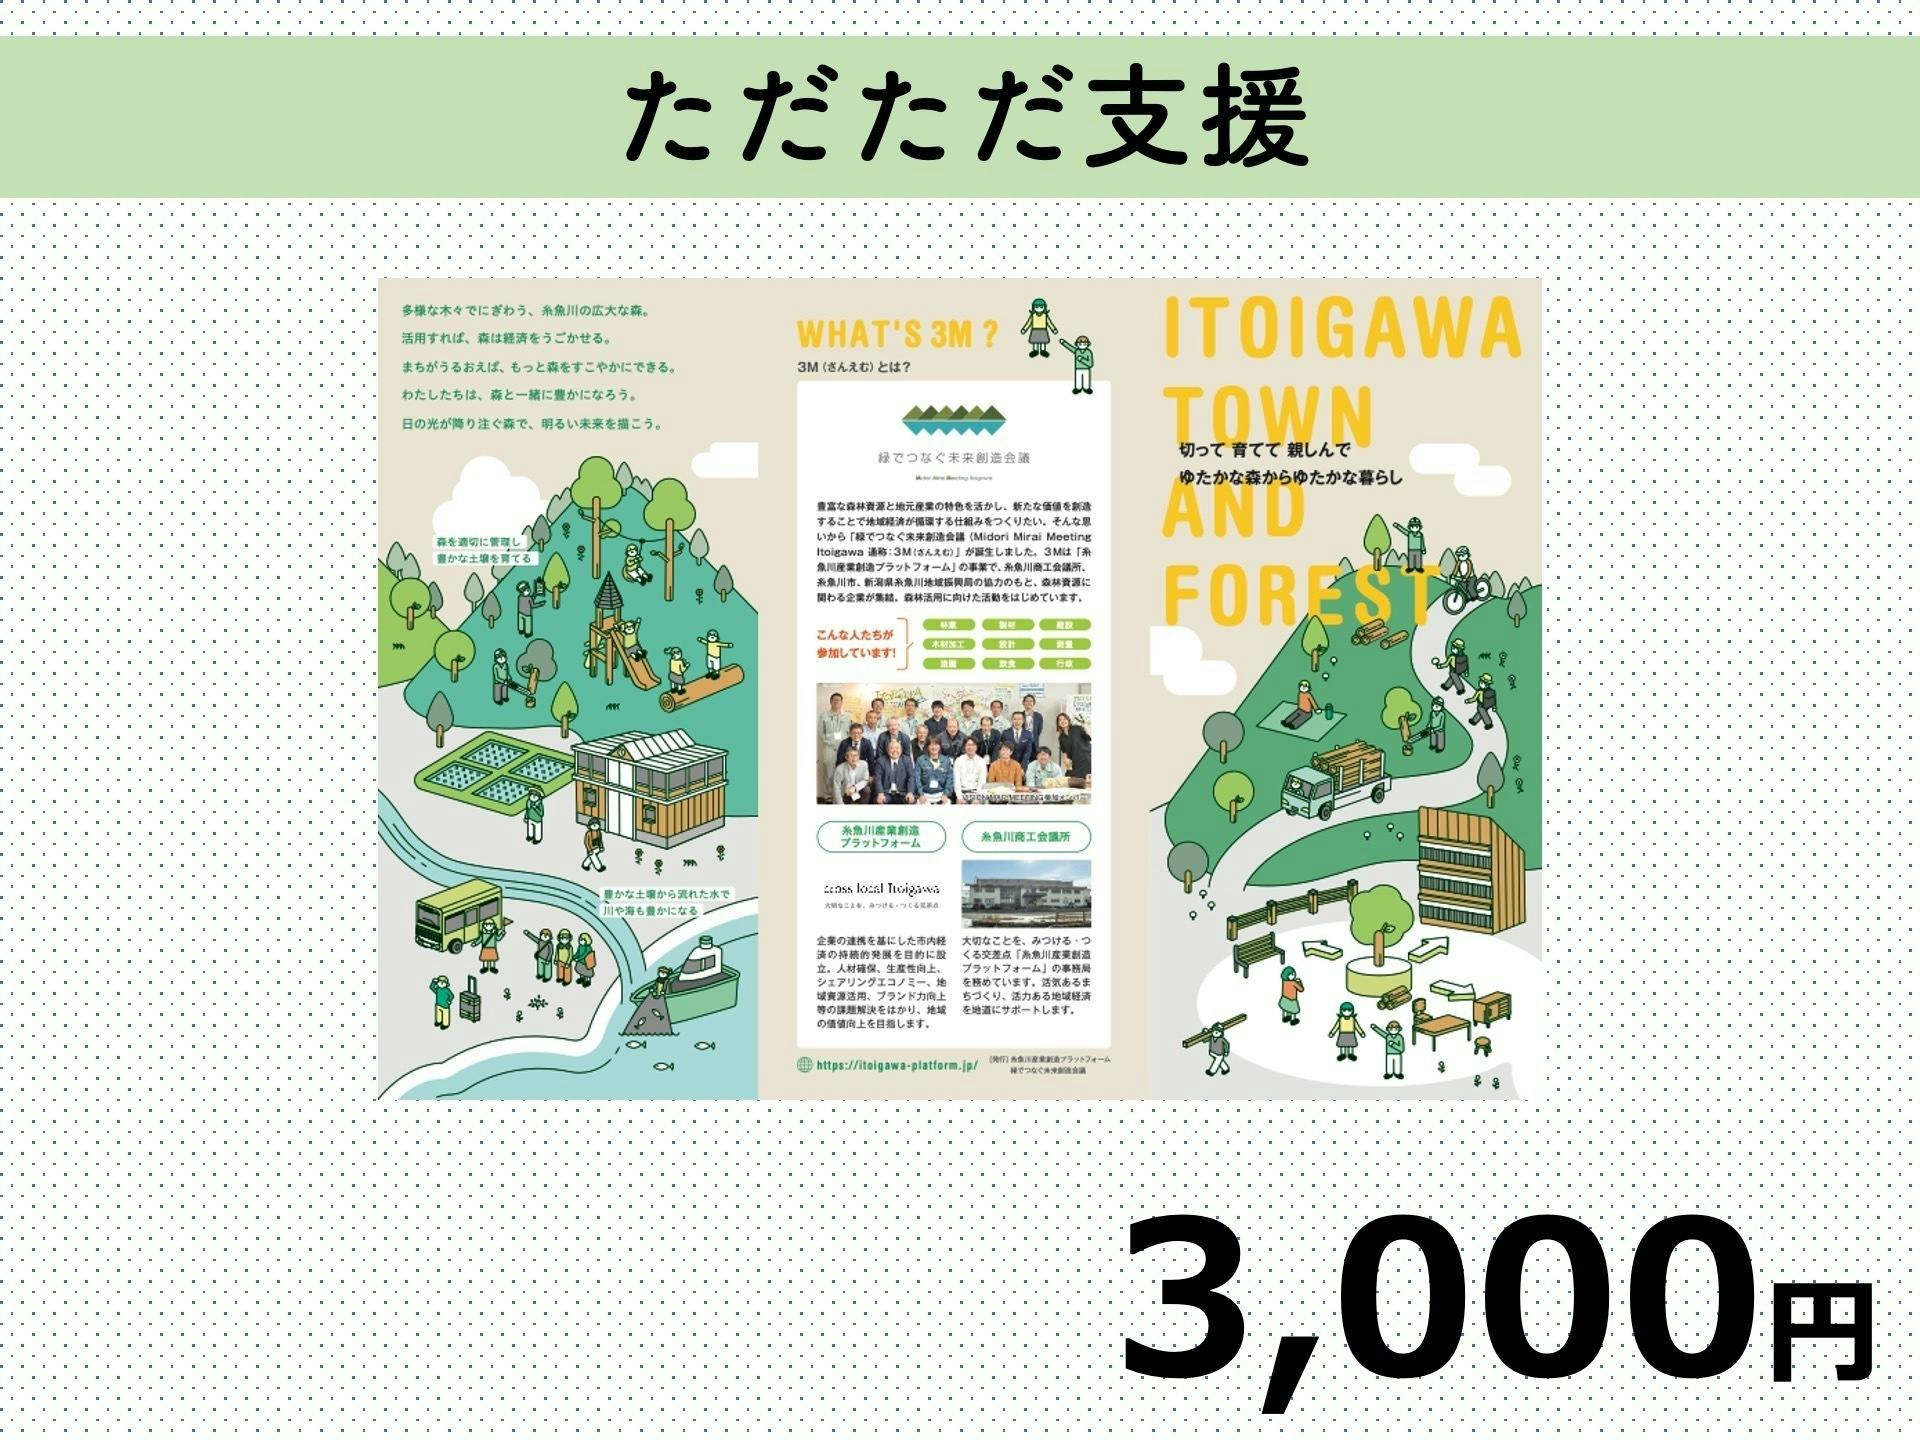 わたしたちのまちを元気に、　糸魚川の森林資源で地域経済を動かしたい！　CAMPFIRE　(キャンプファイヤー)